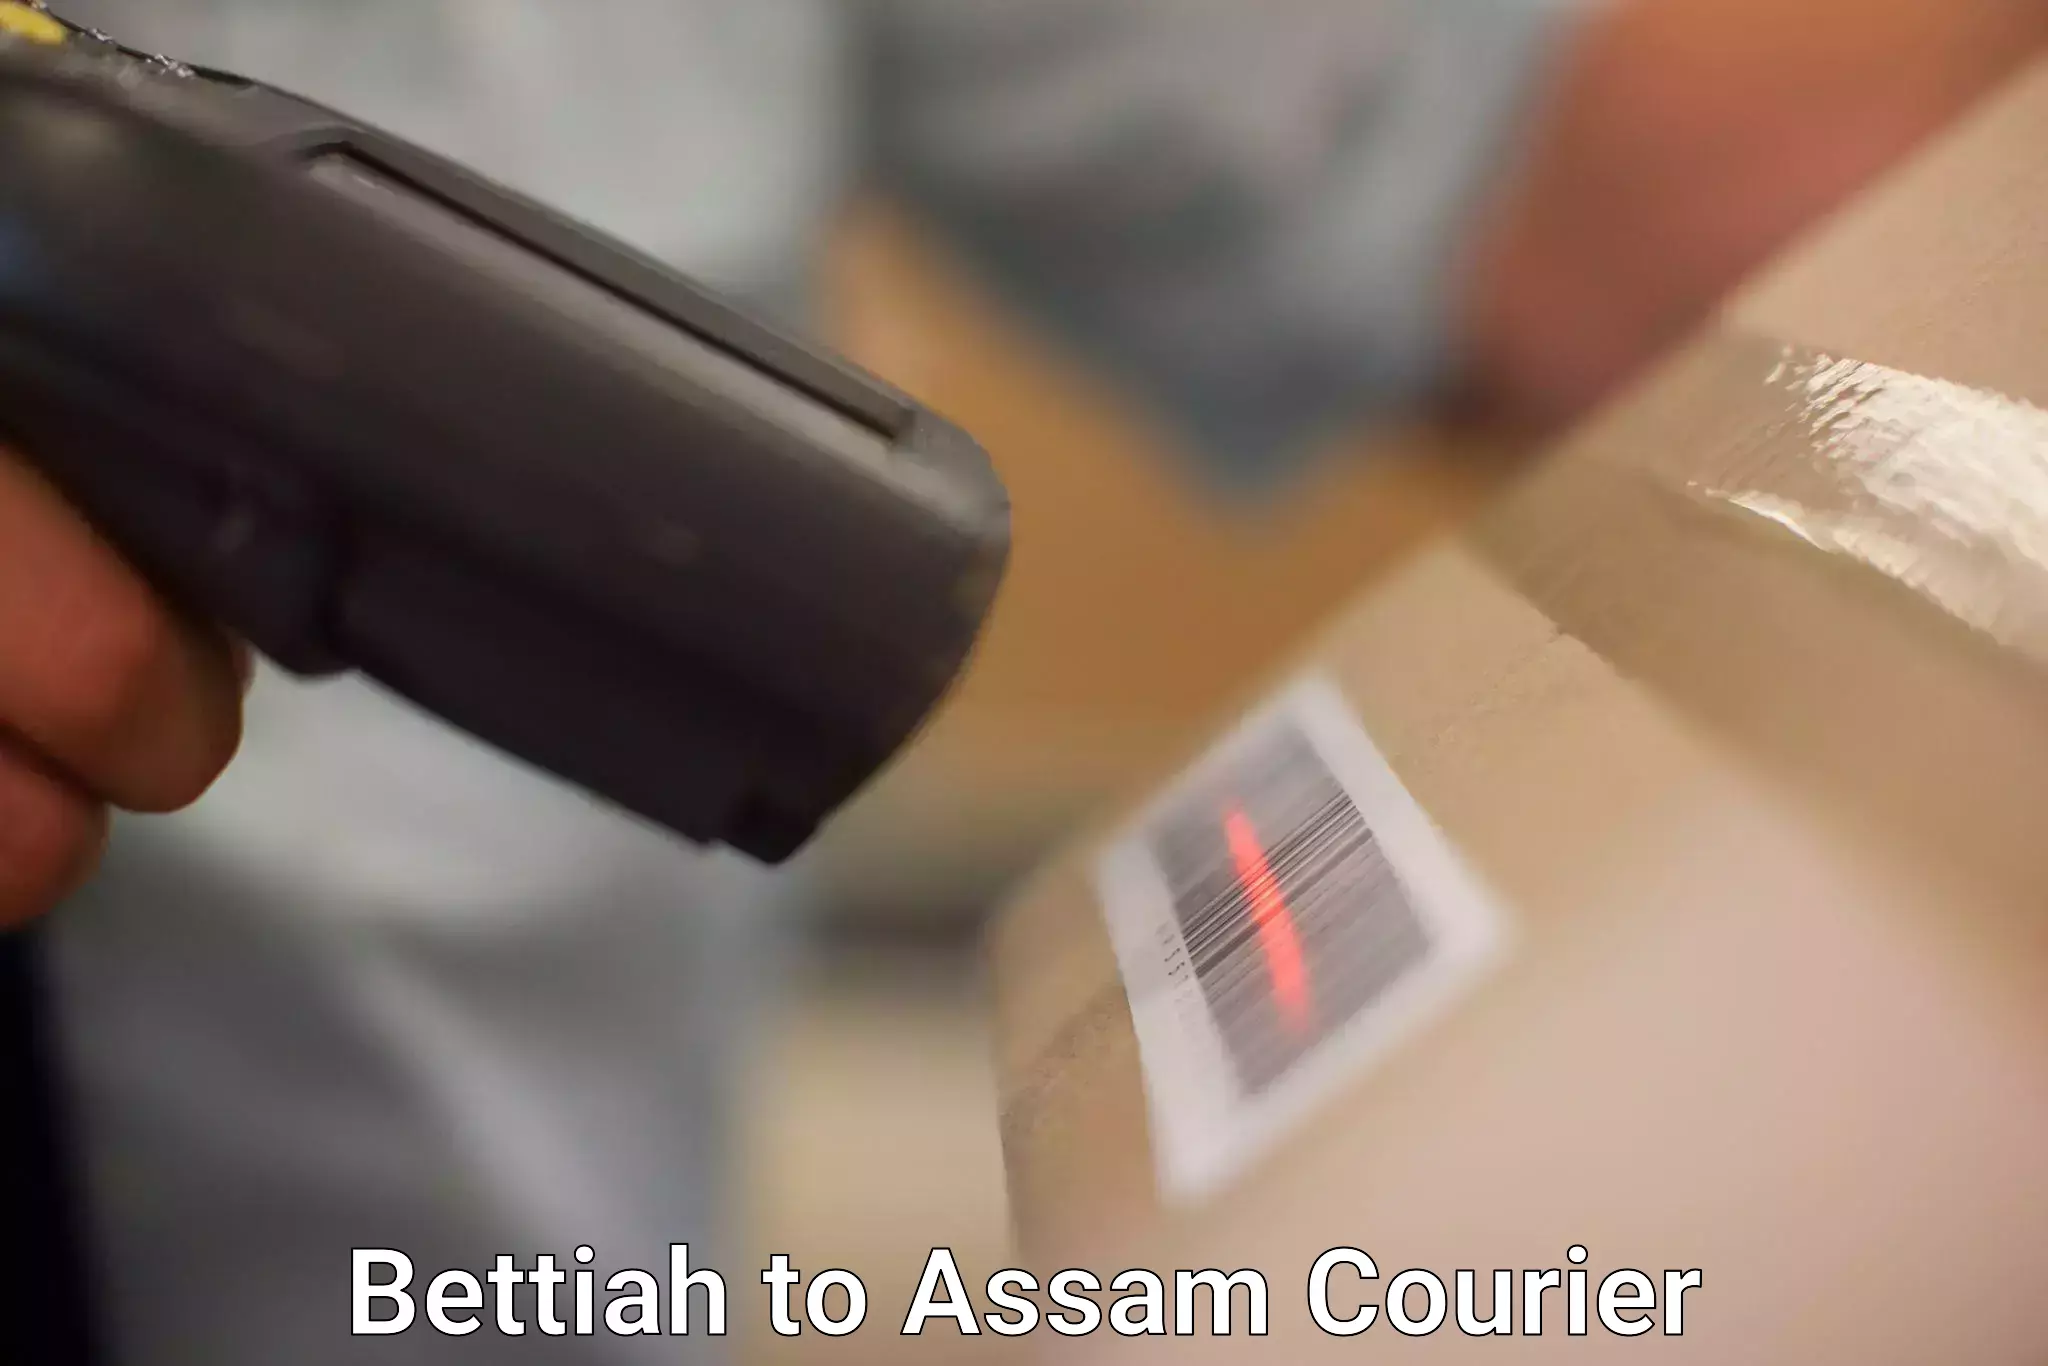 Urban courier service Bettiah to Dhupdhara